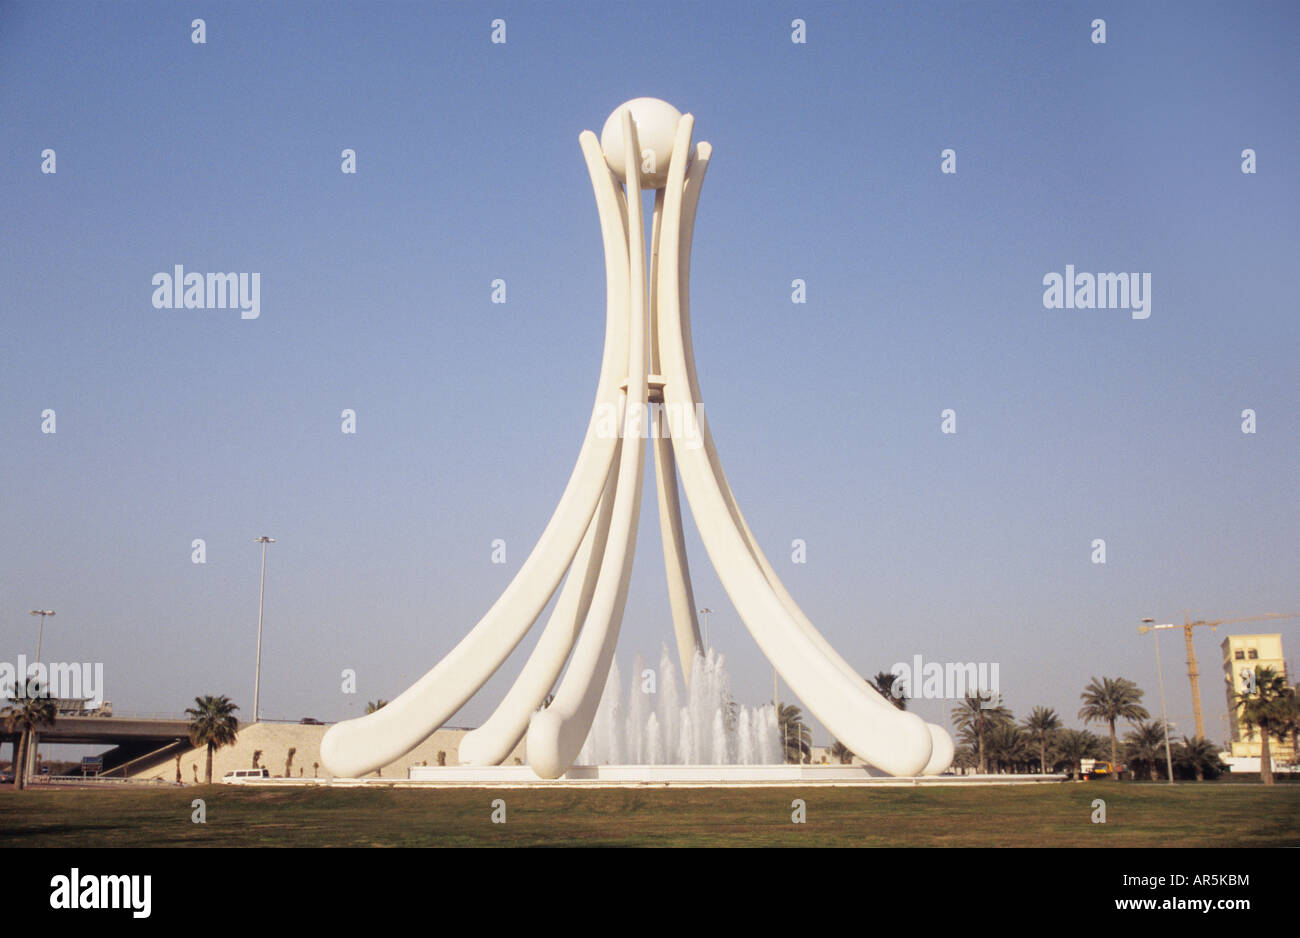 La rotonda de la perla de manama Bahrein Fotografía de stock - Alamy